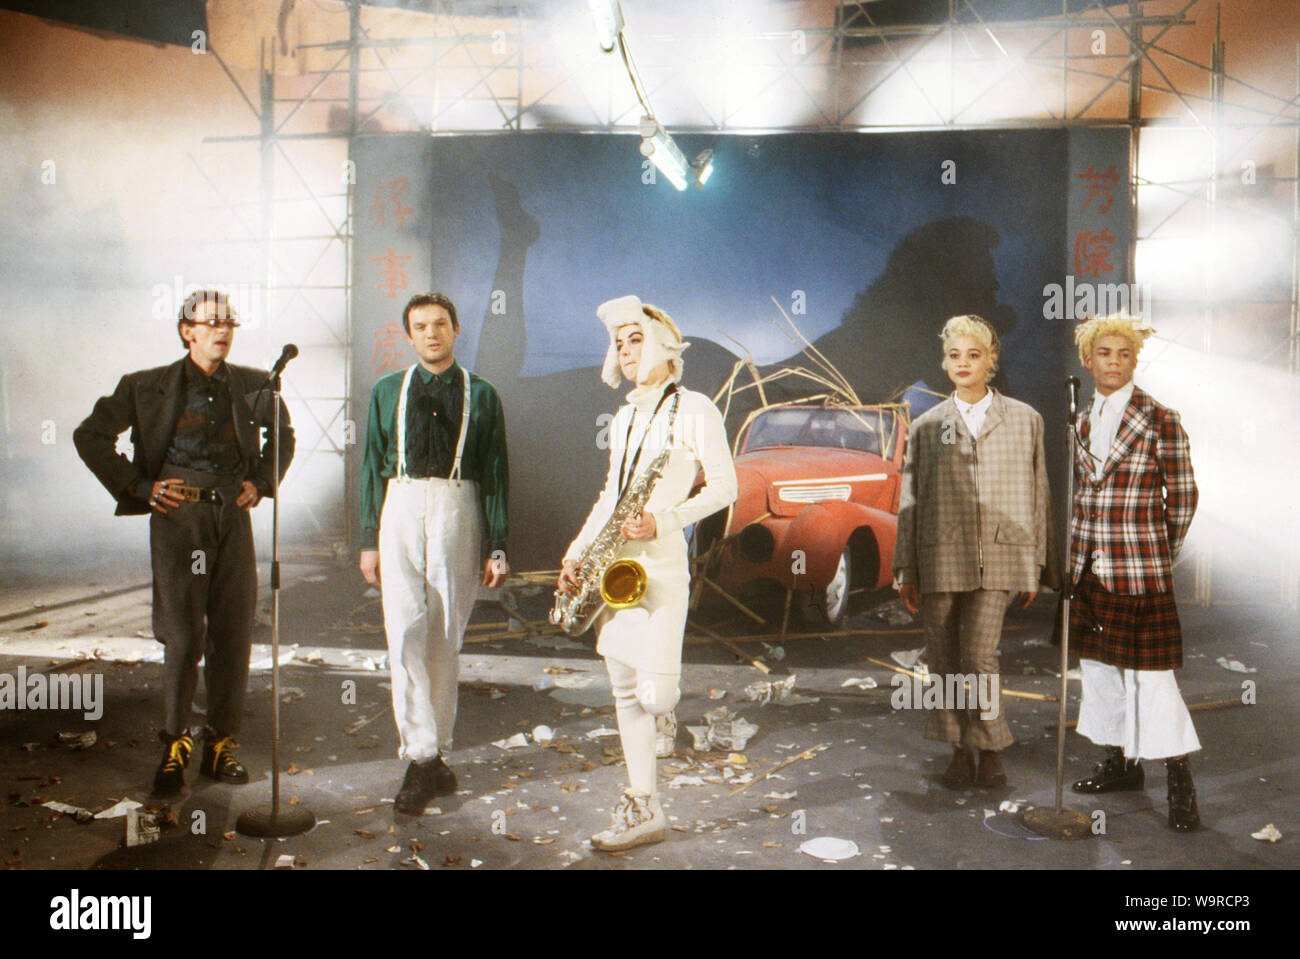 P.I.T. - Peter Illmann Treff, Chartshow, Deutschland 1987, Gaststar: Hong Kong Syndikat, die deutsche Popband. Stockfoto